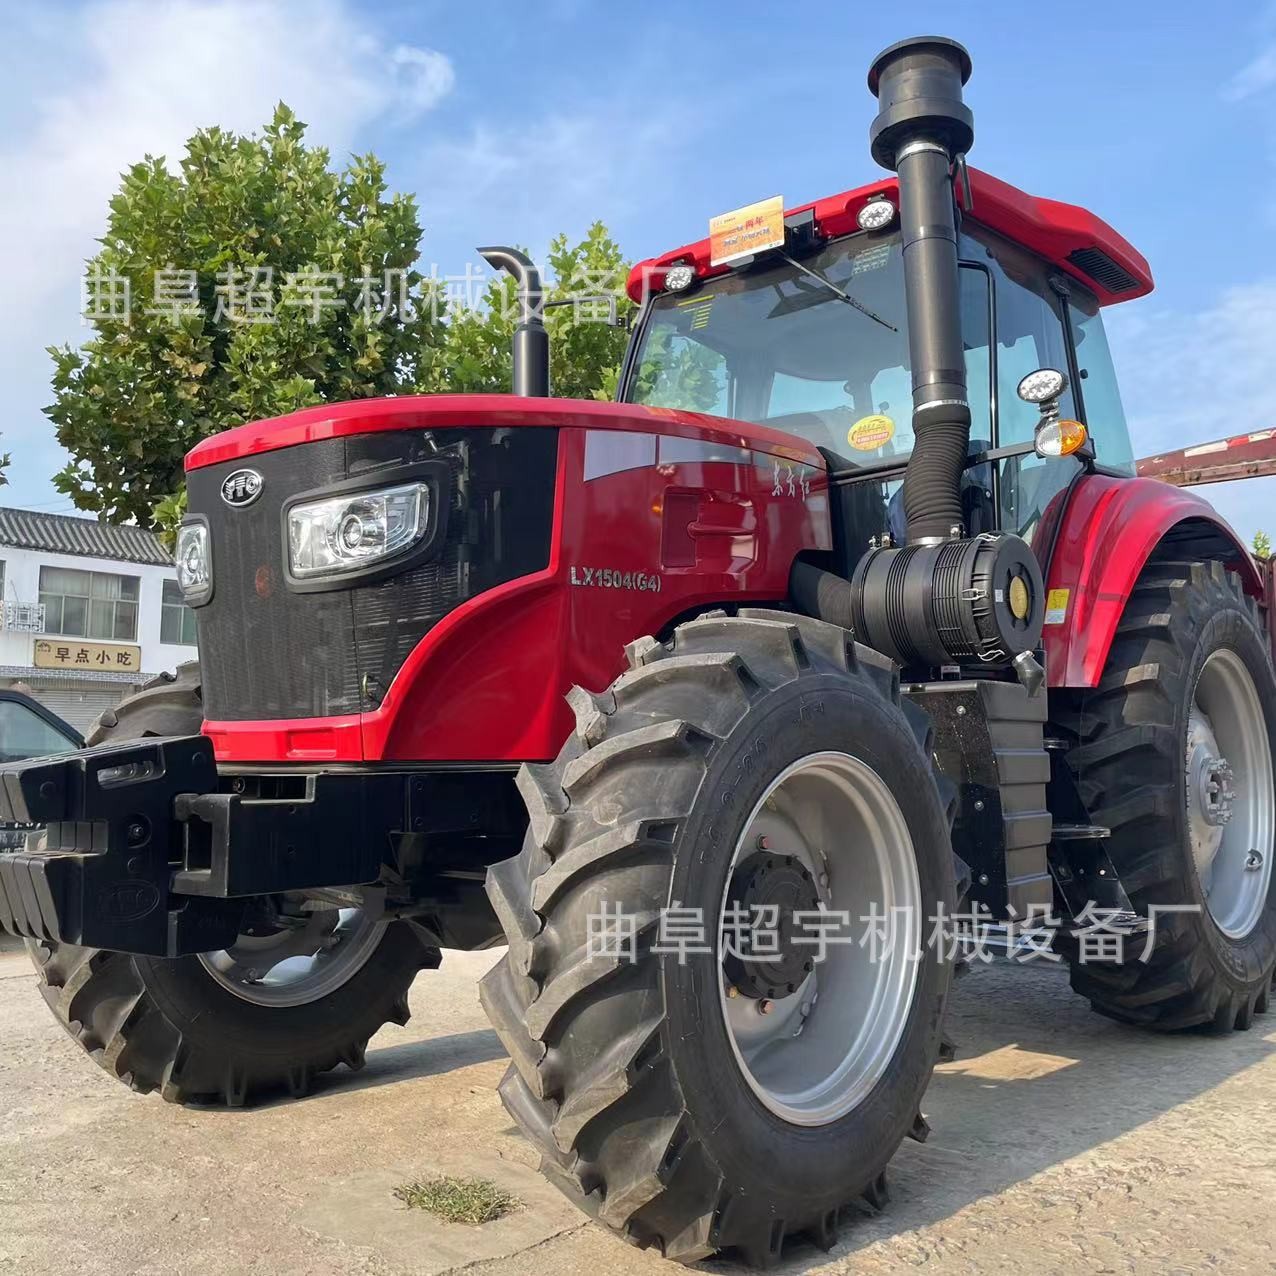 国四东方红LX1504拖拉机 农用犁地旋耕机 大马力轮式1604拖拉机